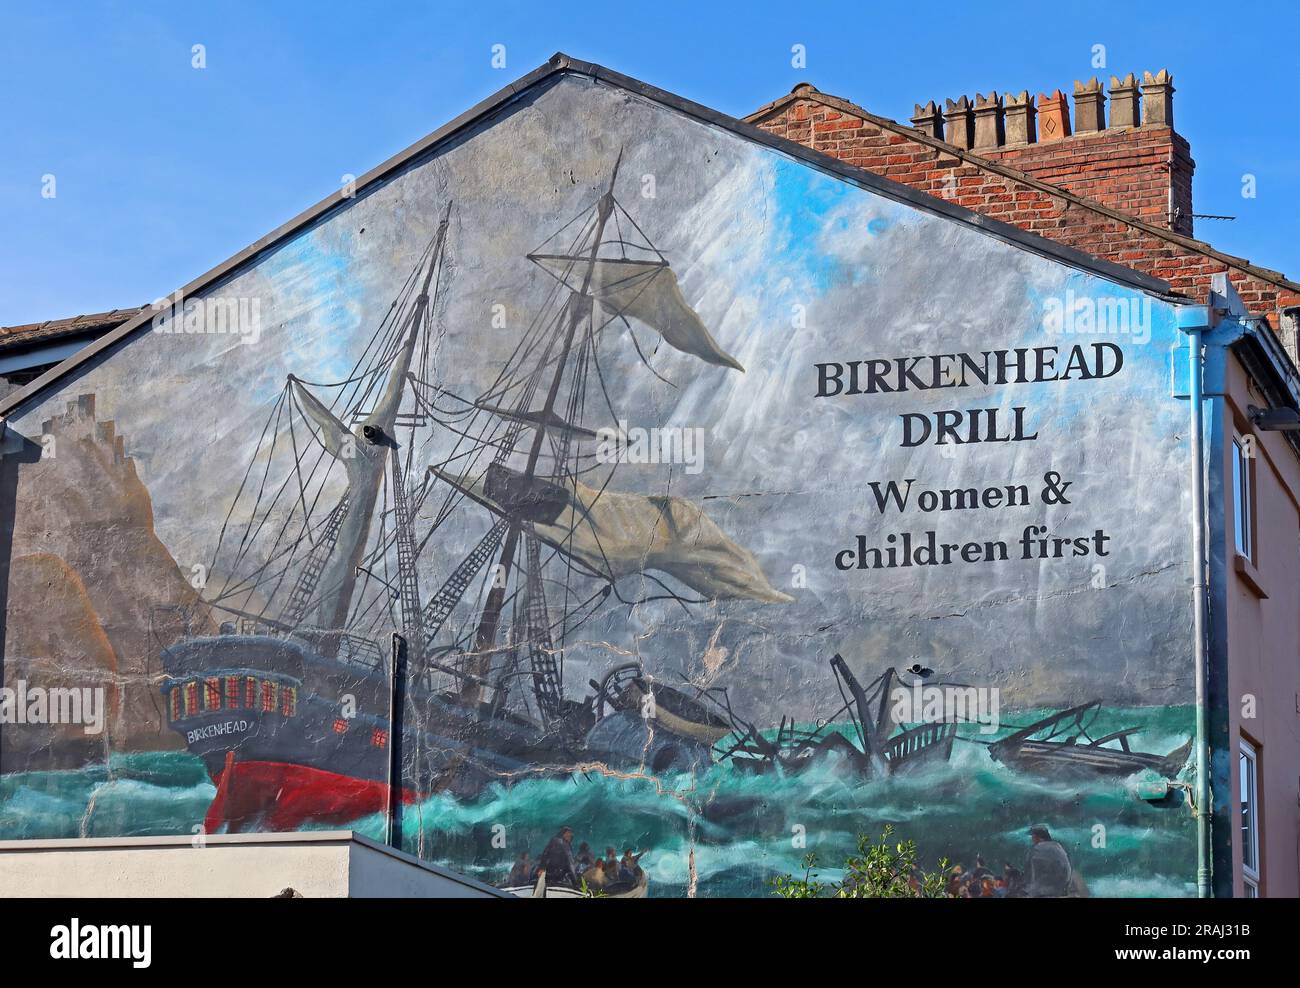 Paul Curtis Wandbild zur Birkenhead Drill, Women and Children First, als die maritimen Überlebensressourcen, wie Rettungsboote, begrenzt waren Stockfoto